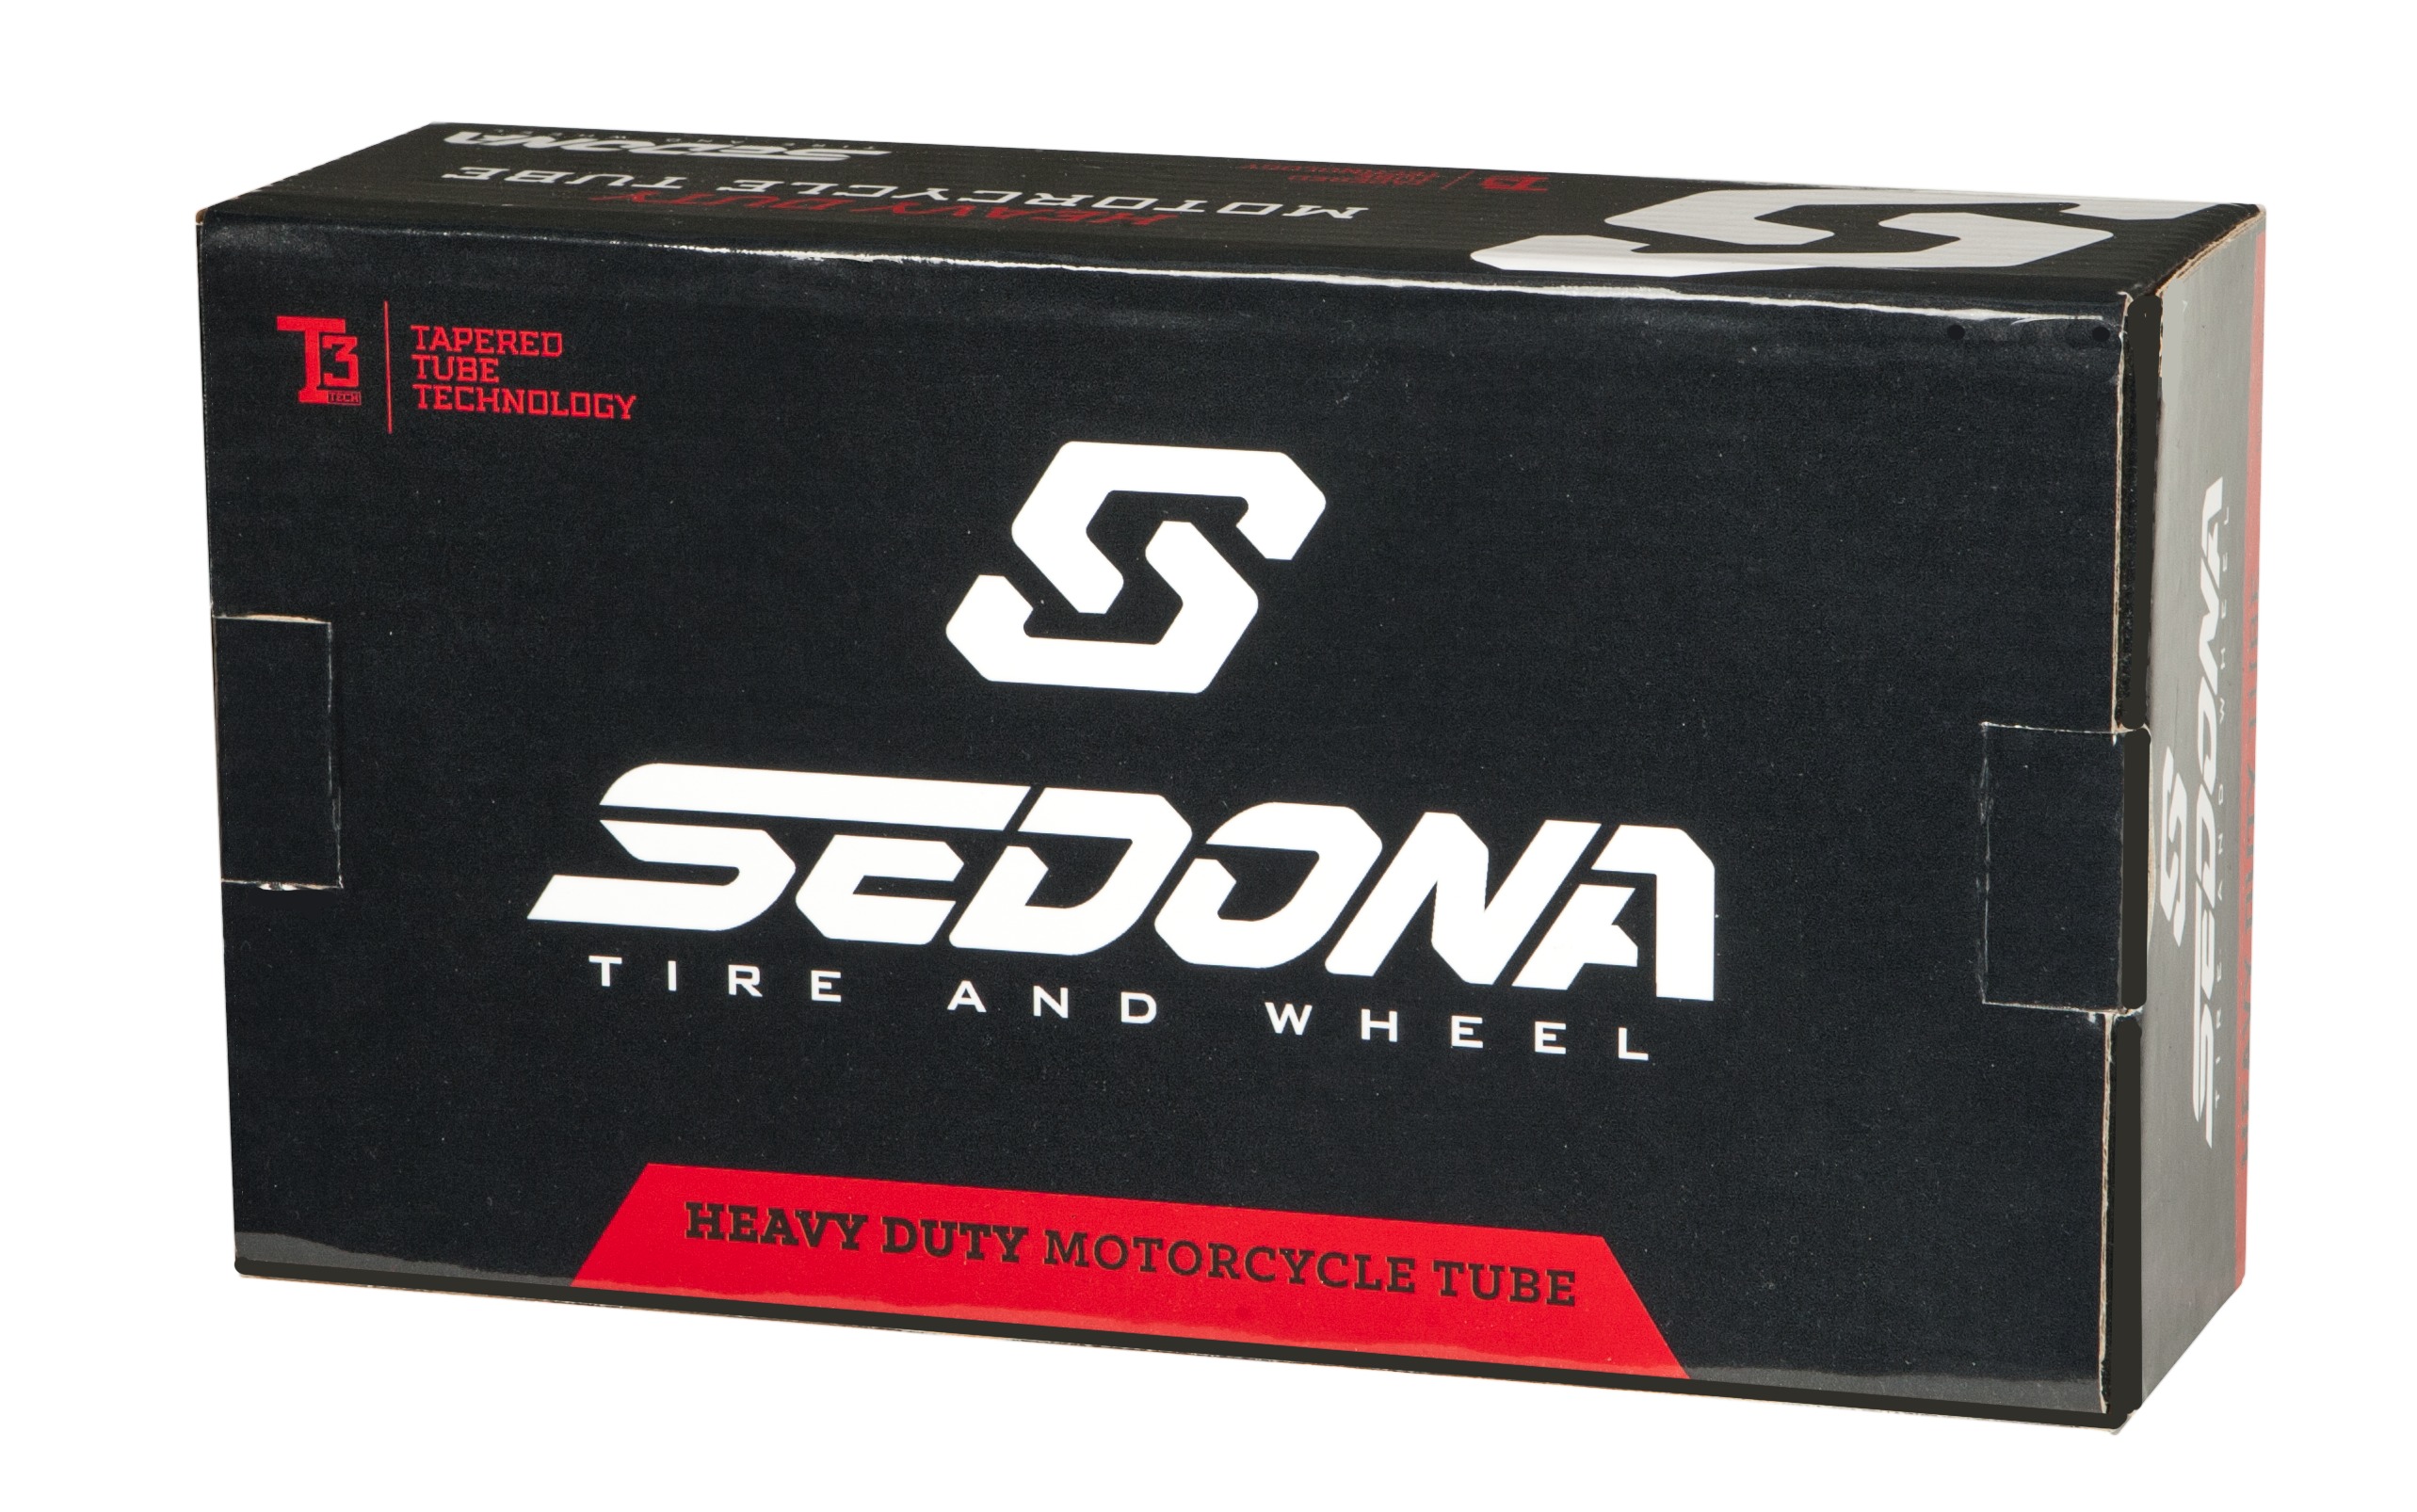 Sedona Heavy Duty Motorcycle Tube 2.75/3.00-14 - Click Image to Close